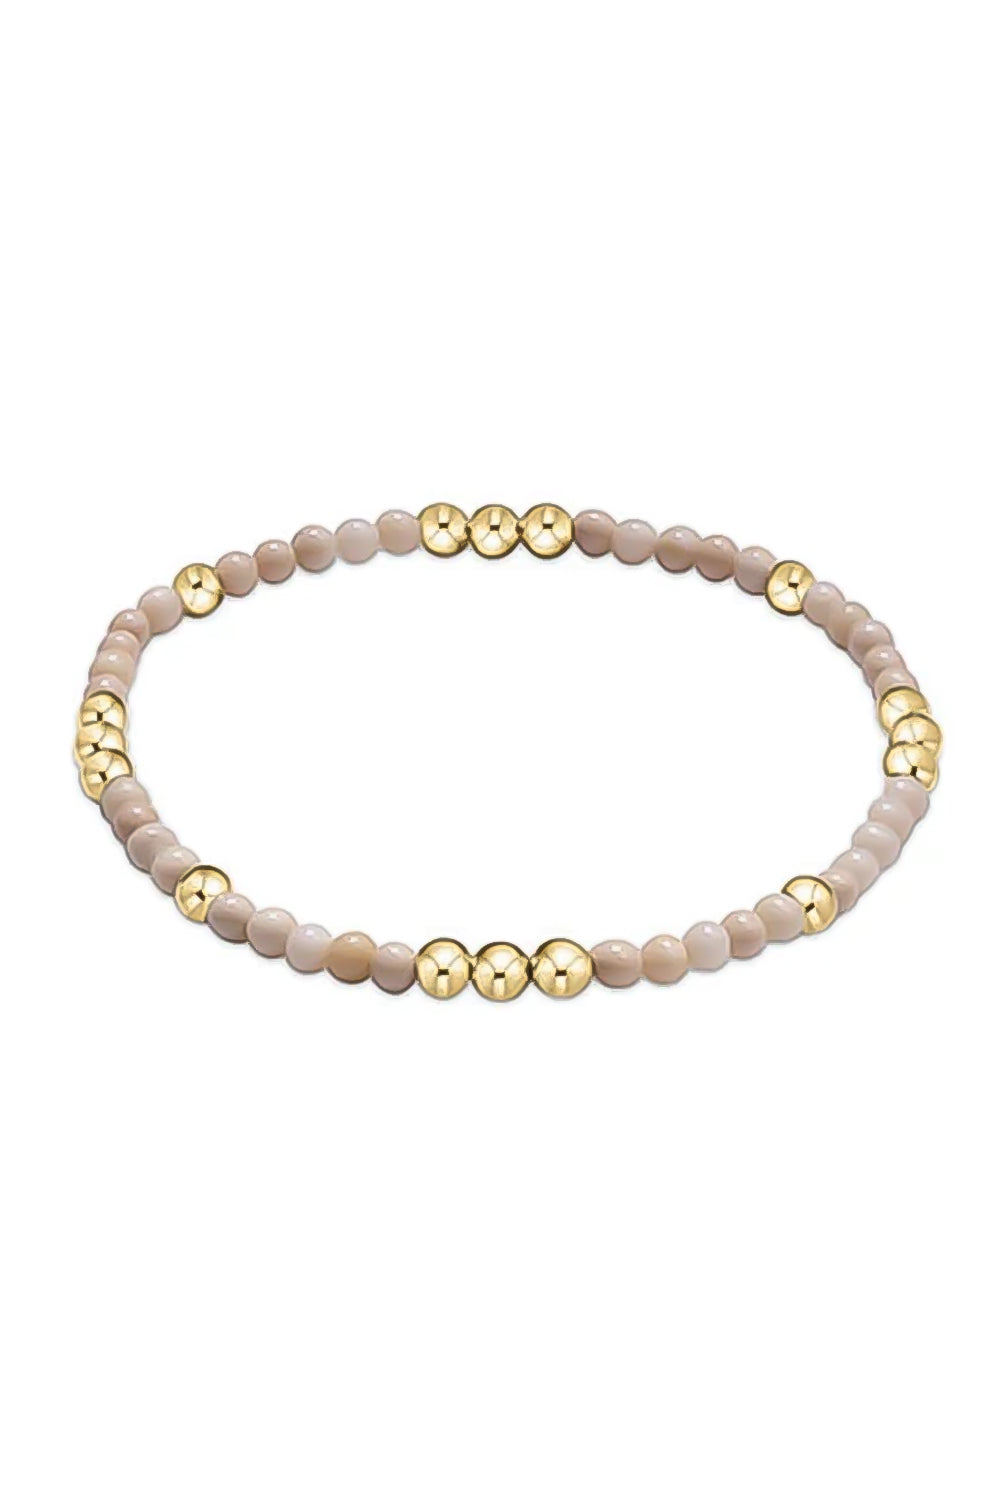 enewton: Worthy Pattern 3mm Bead Bracelet - Riverstone | Makk Fashions